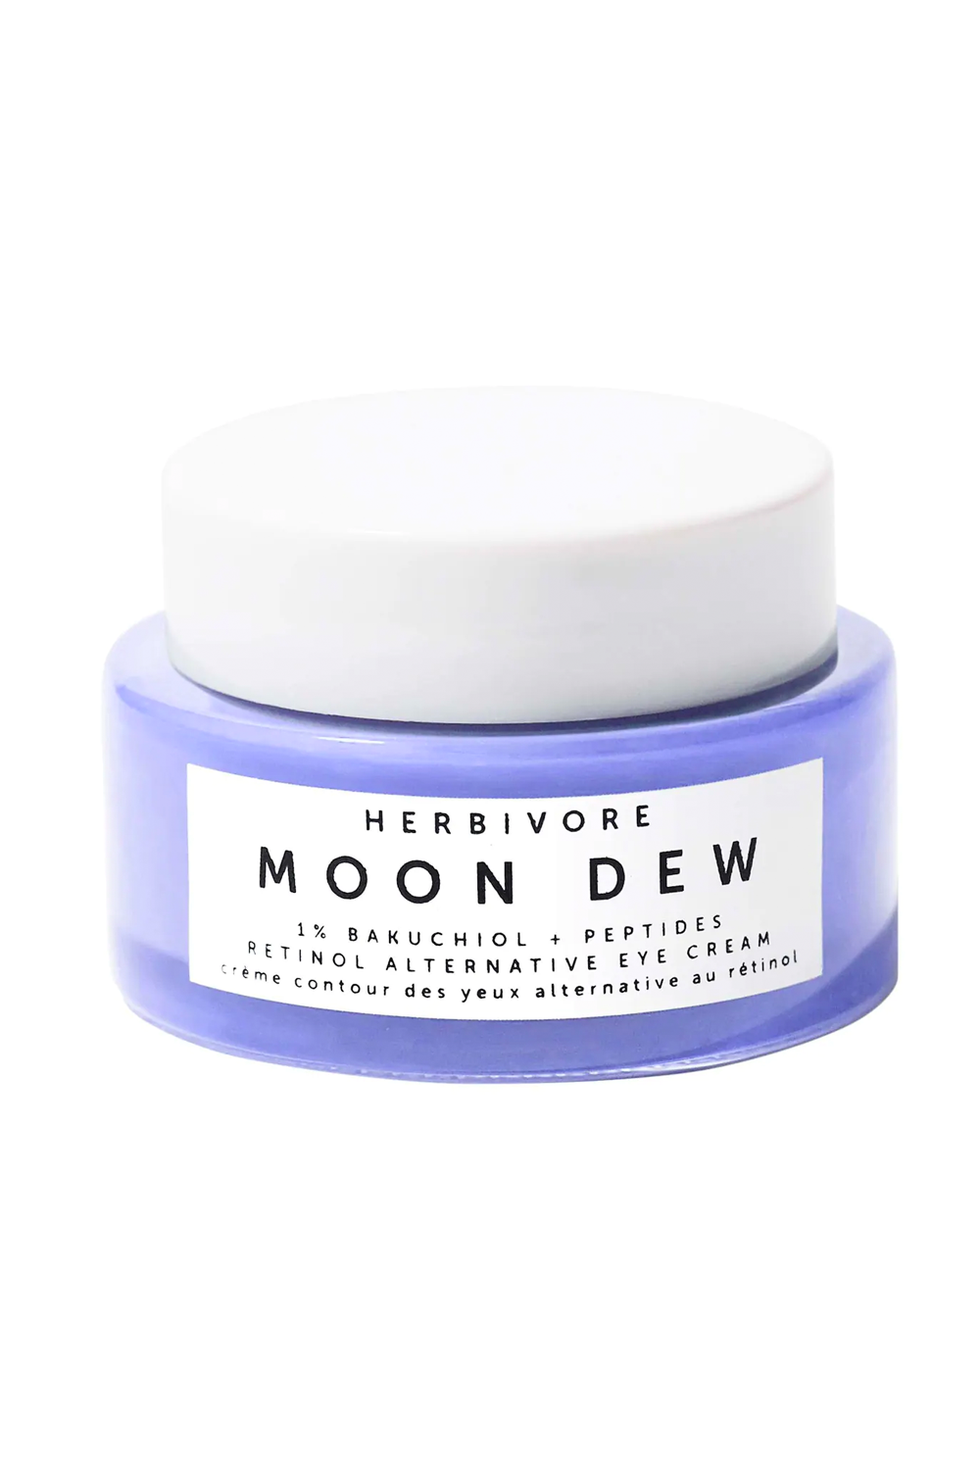 Herbivore Moon Dew Bakuchiol + Peptides Eye Cream